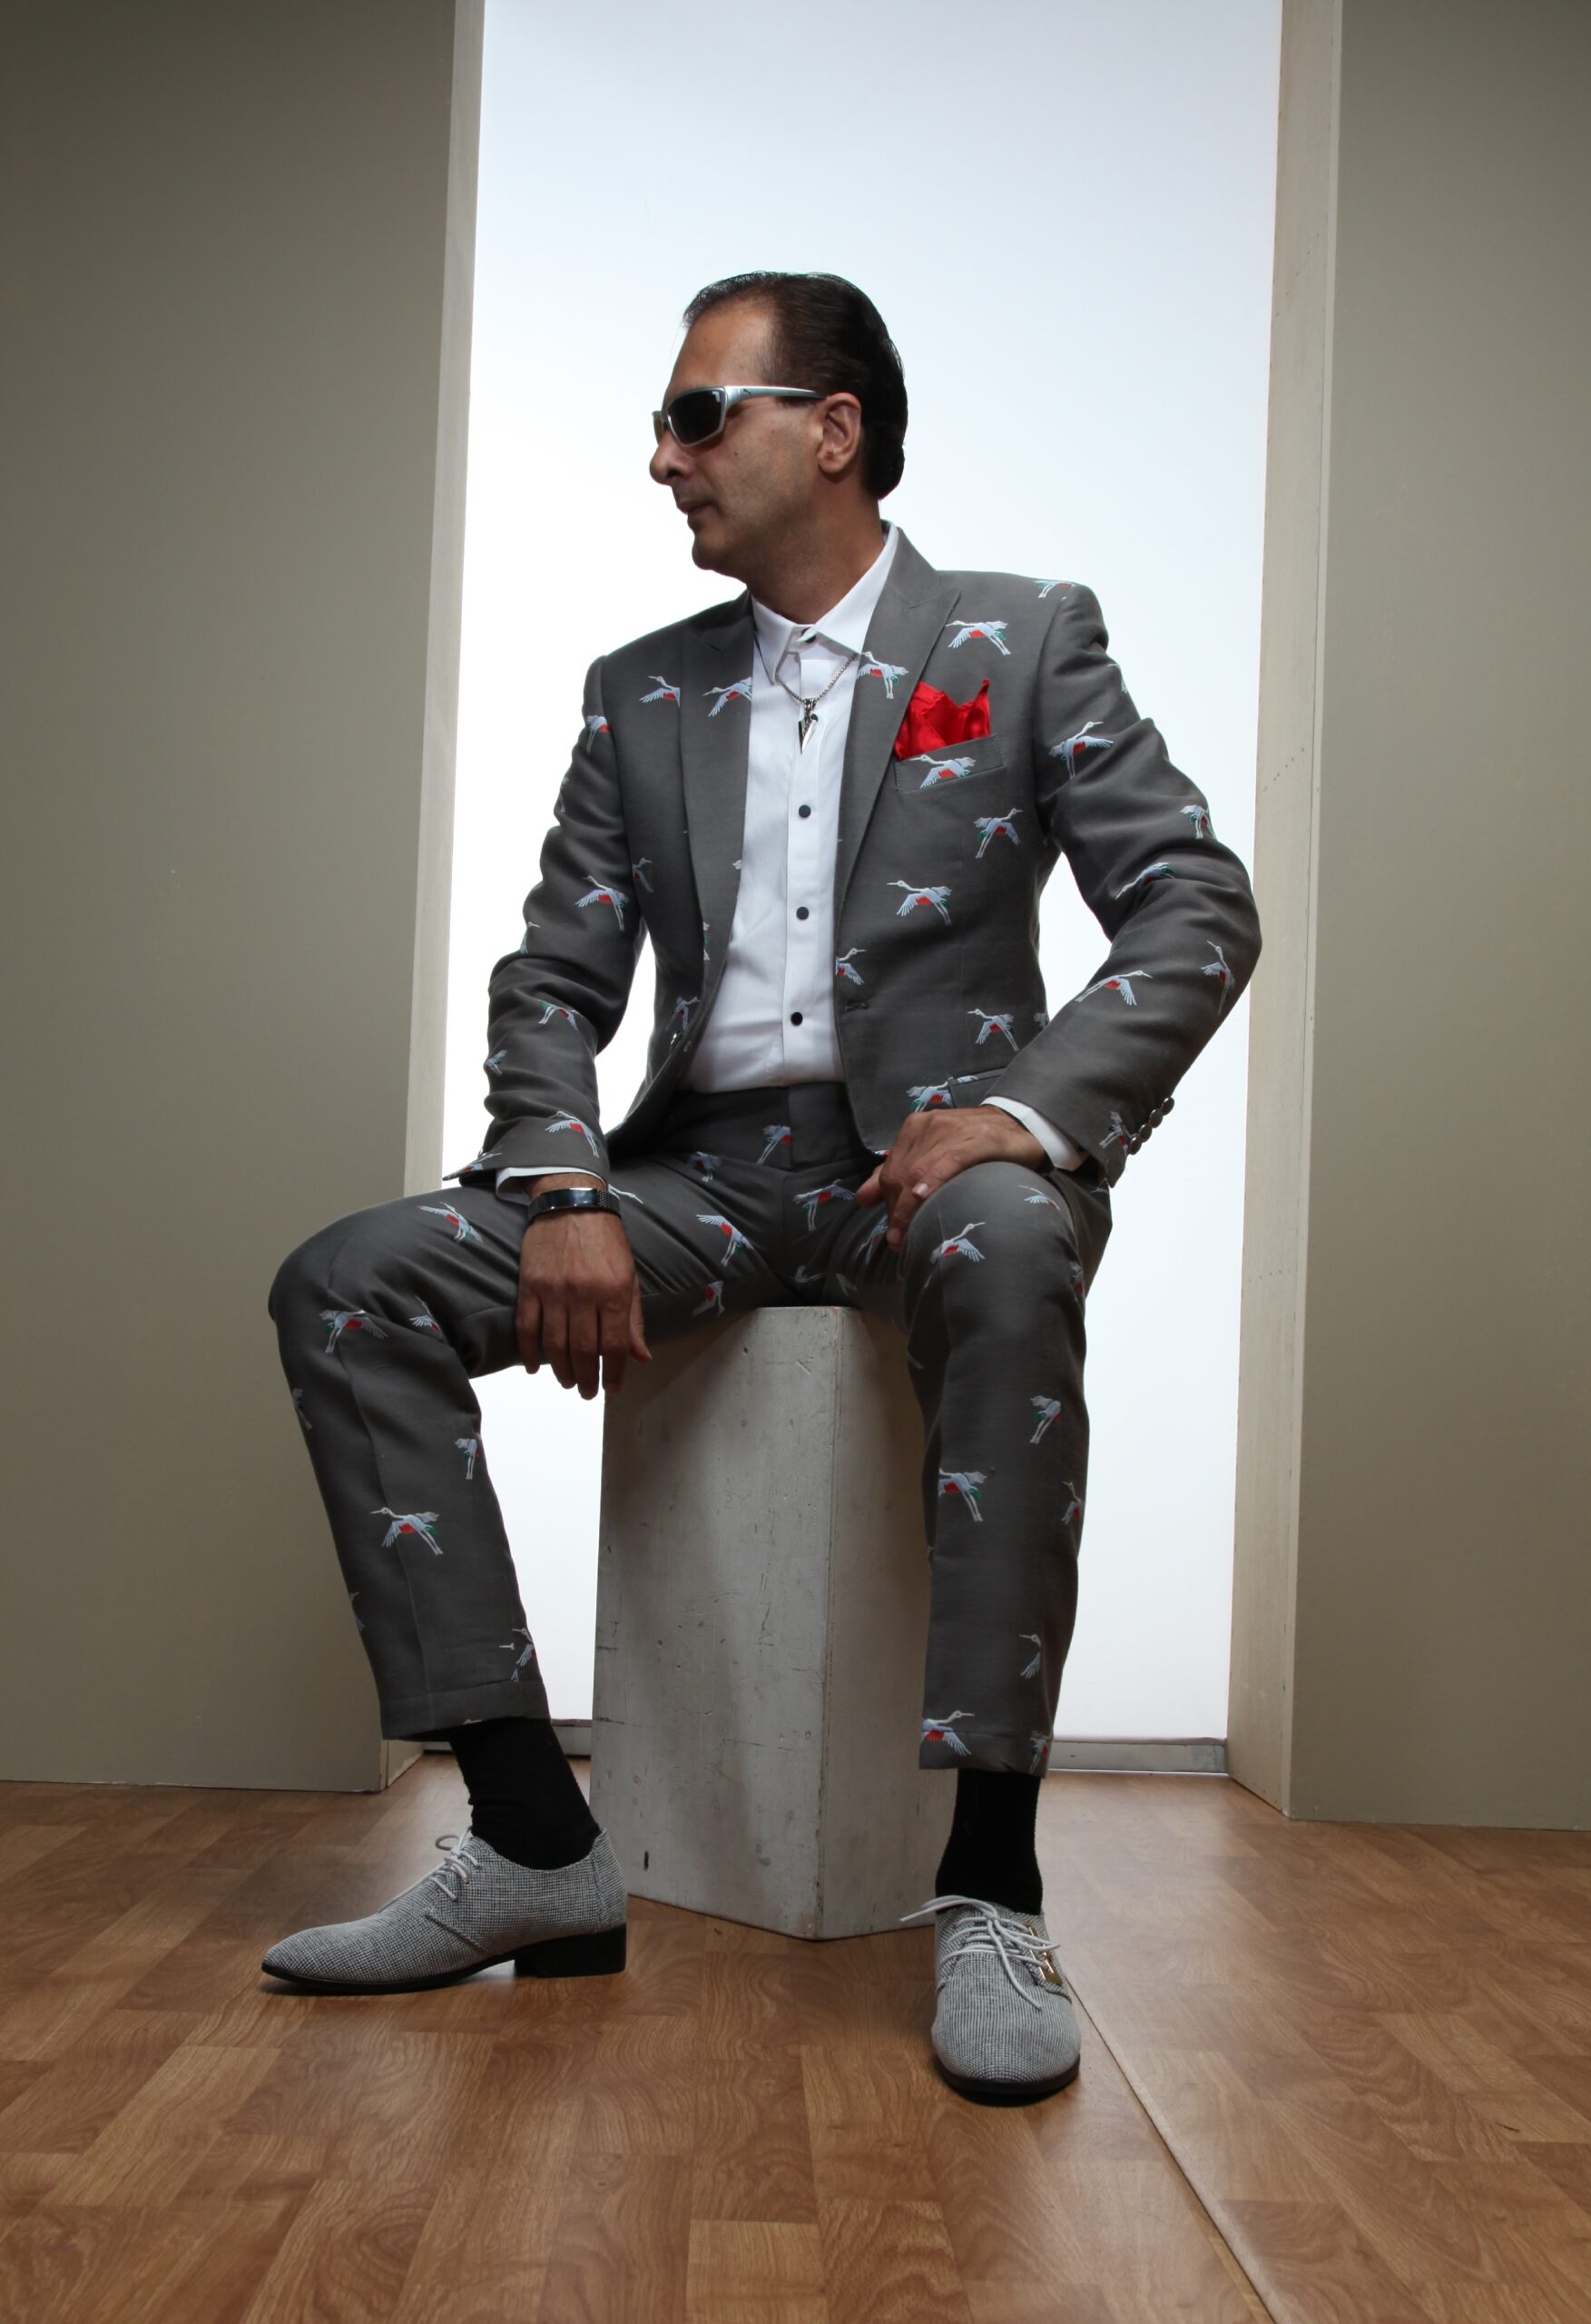 MST-5009-02-rent_rental_hire_tuxedo_suit_black_tie_suit_designer_suits_shop_tailor_tailors_singapore_wedding